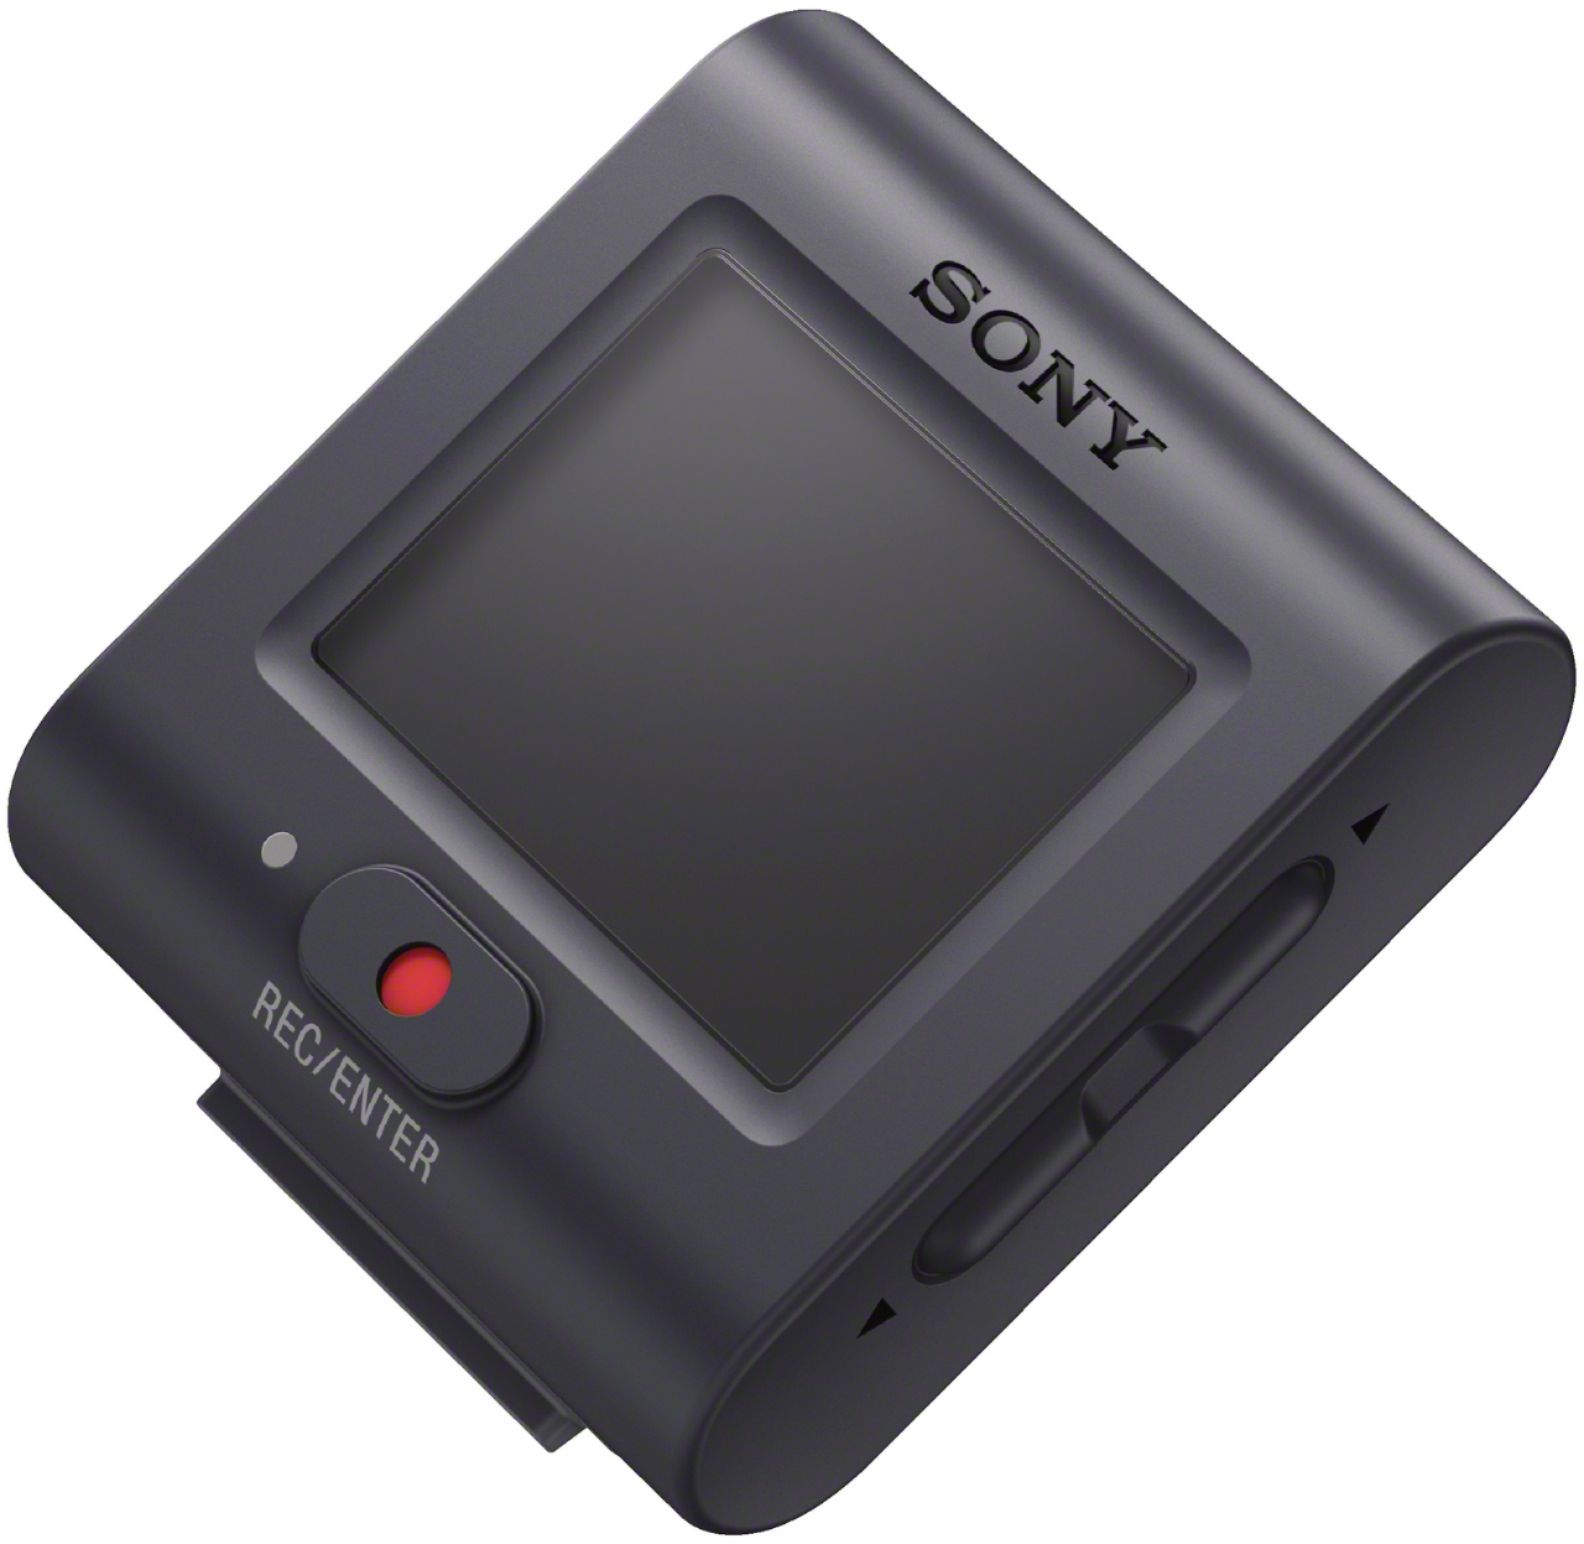 カメラ デジタルカメラ Best Buy: Sony HDR-AS50 HD Action Camera with Live View Remote 